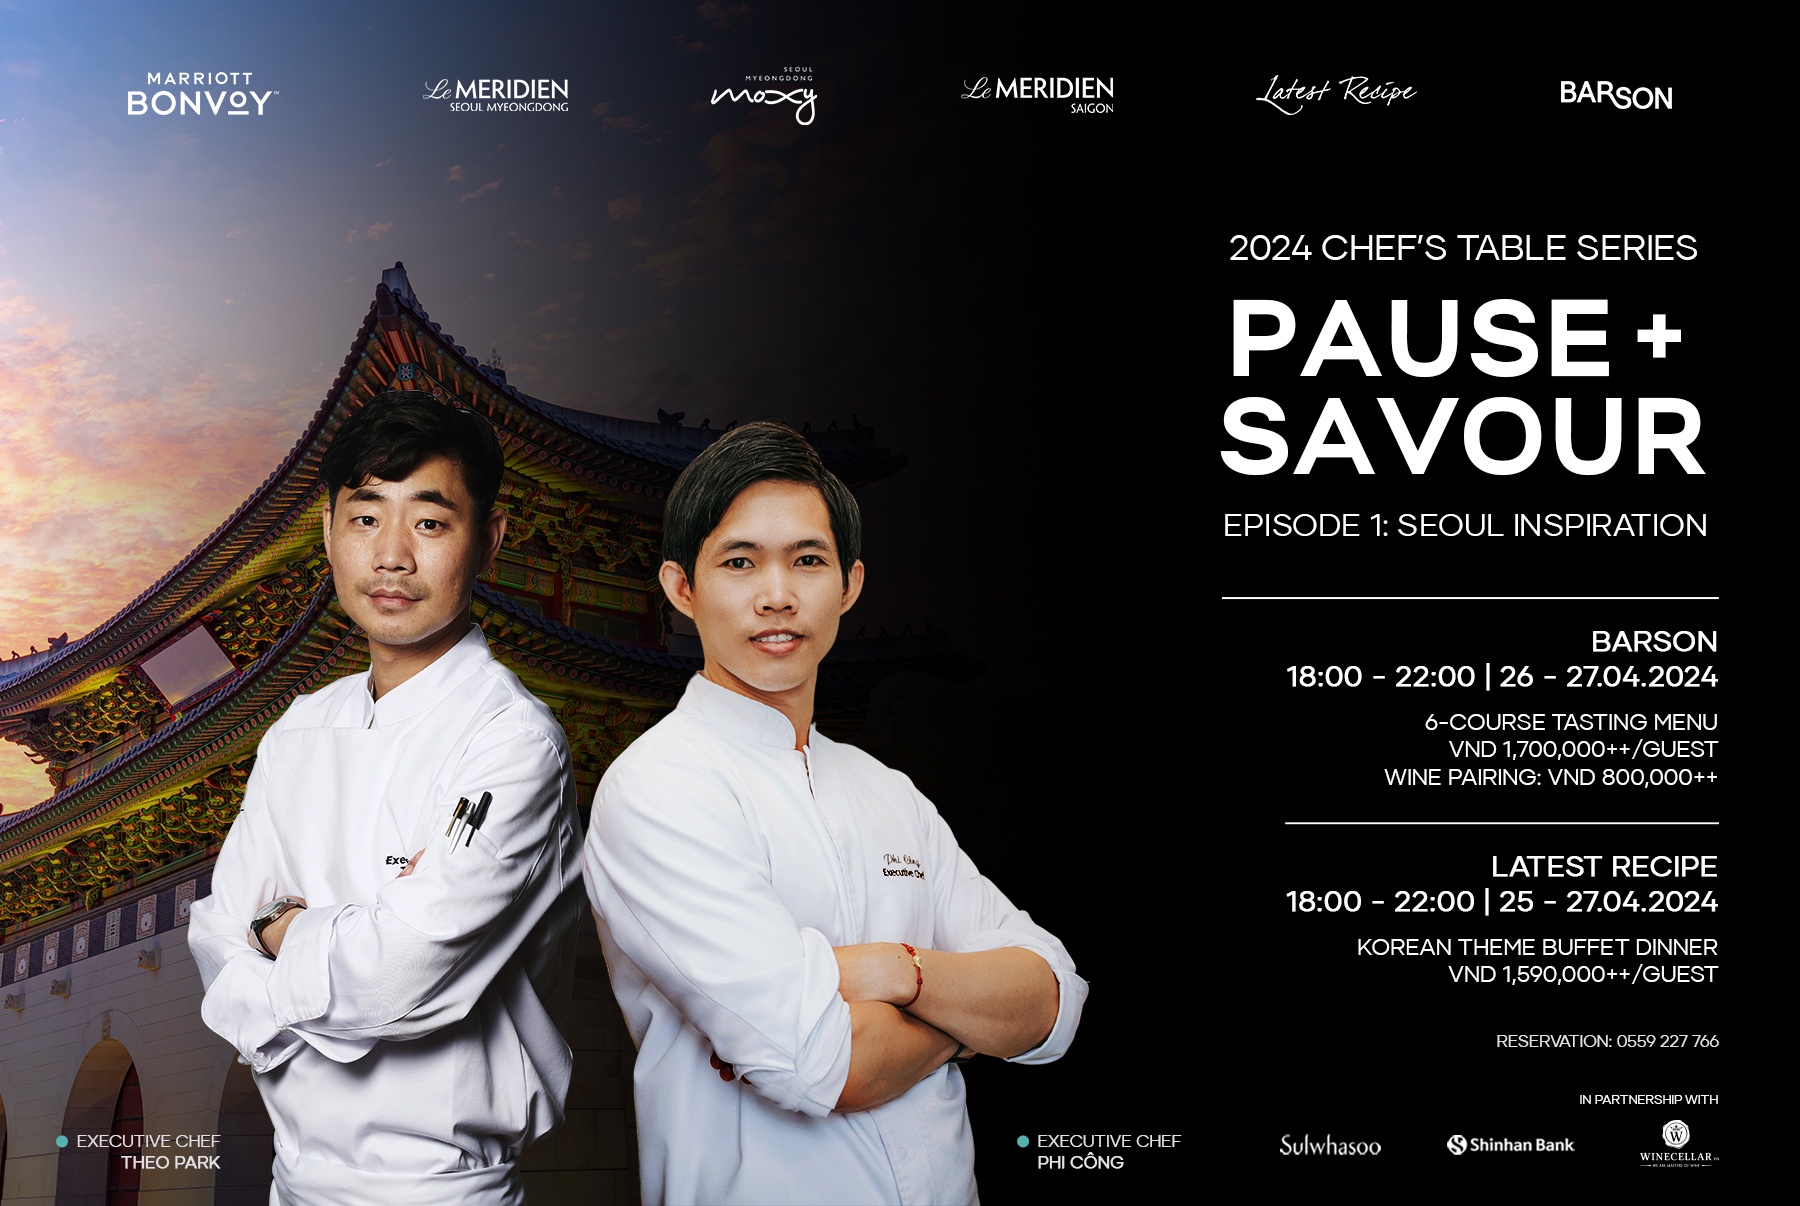 Le Méridien Saigon launches new series of Chefs' Table